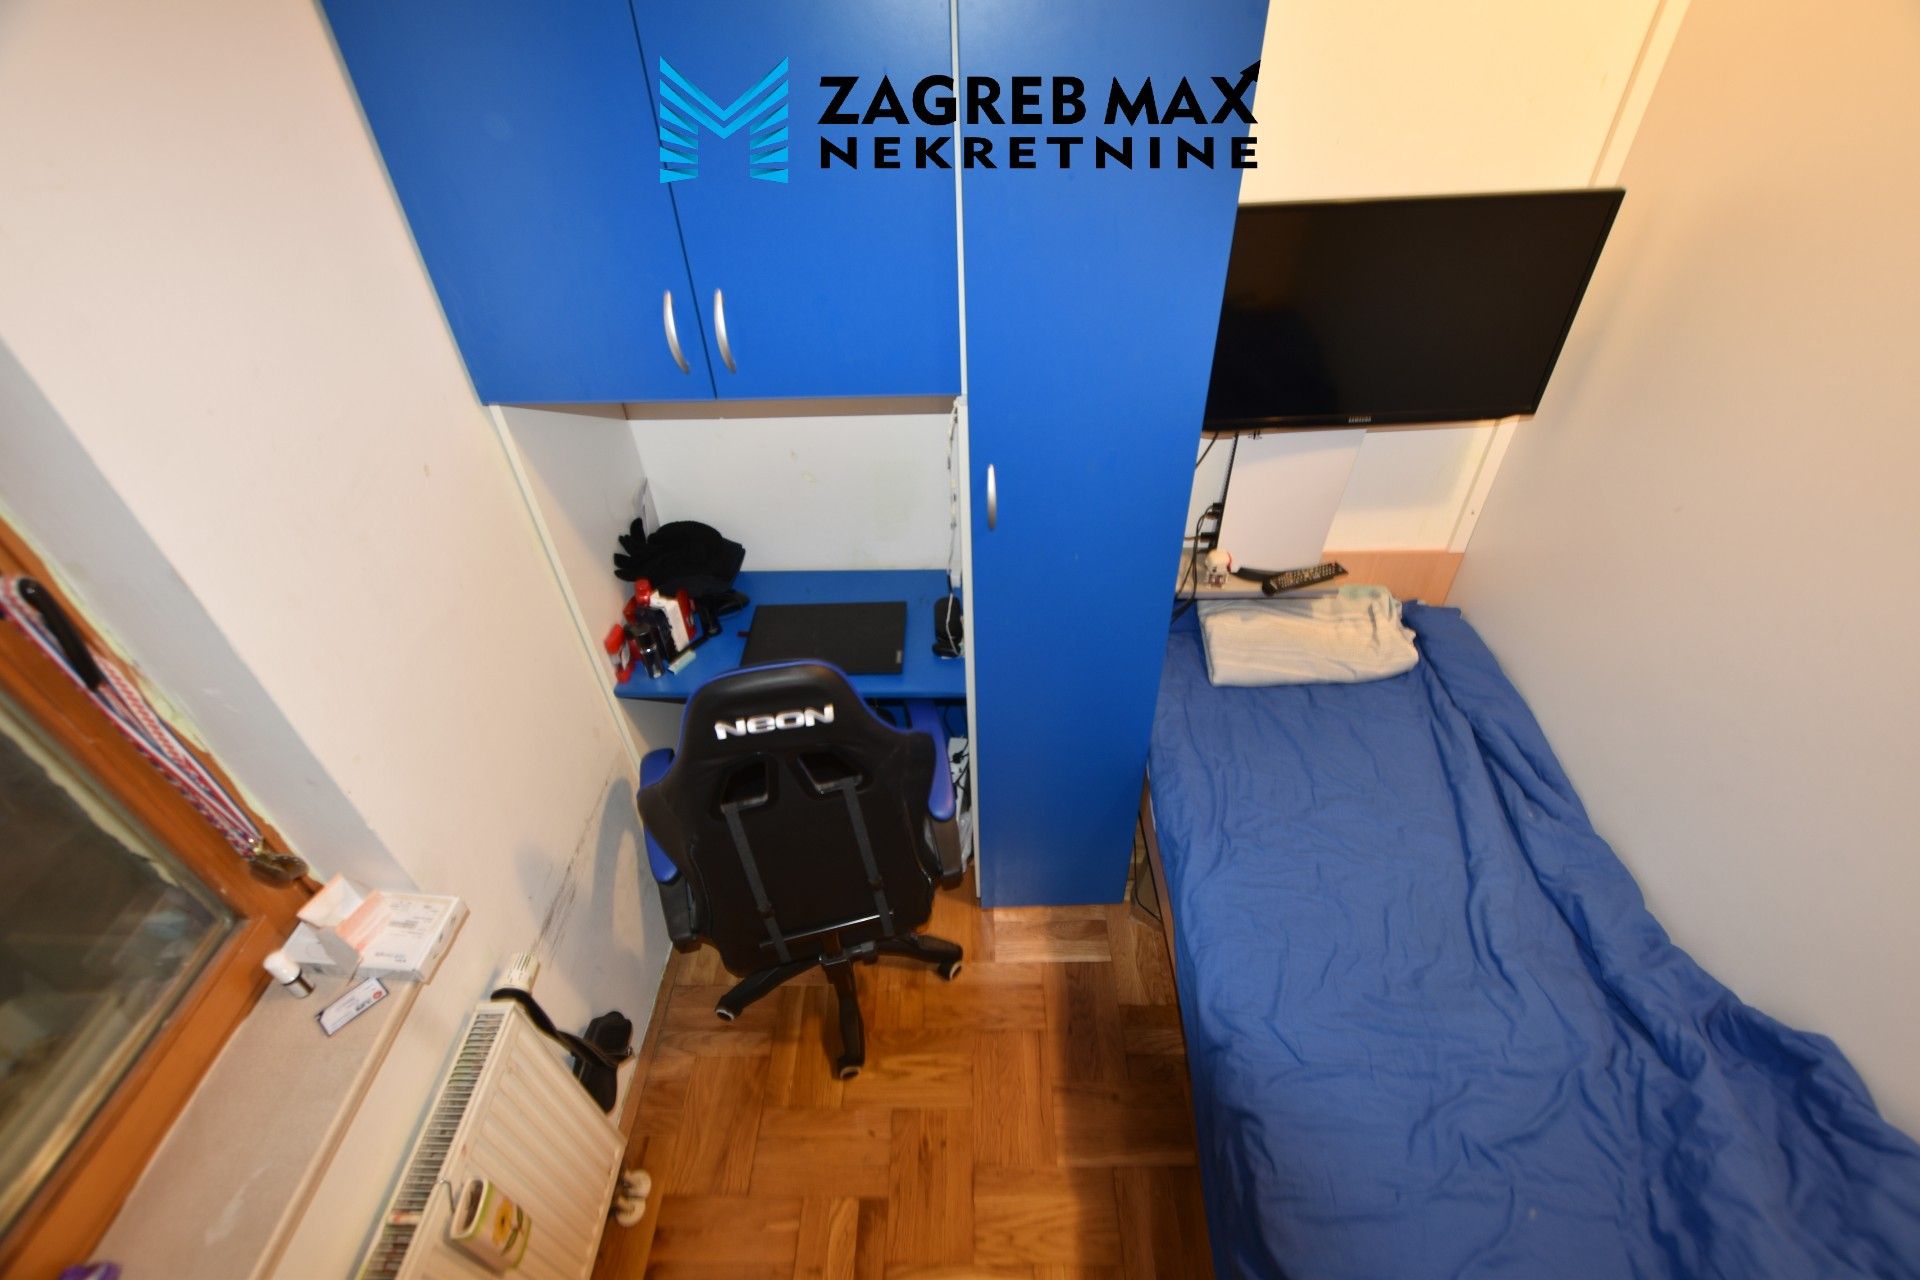 Zagreb - ŠPANSKO – Ugodan 3soban stan 57 m2, terasa 18m2, 3 spavaće sobe, prizemlje, odlična lokacija